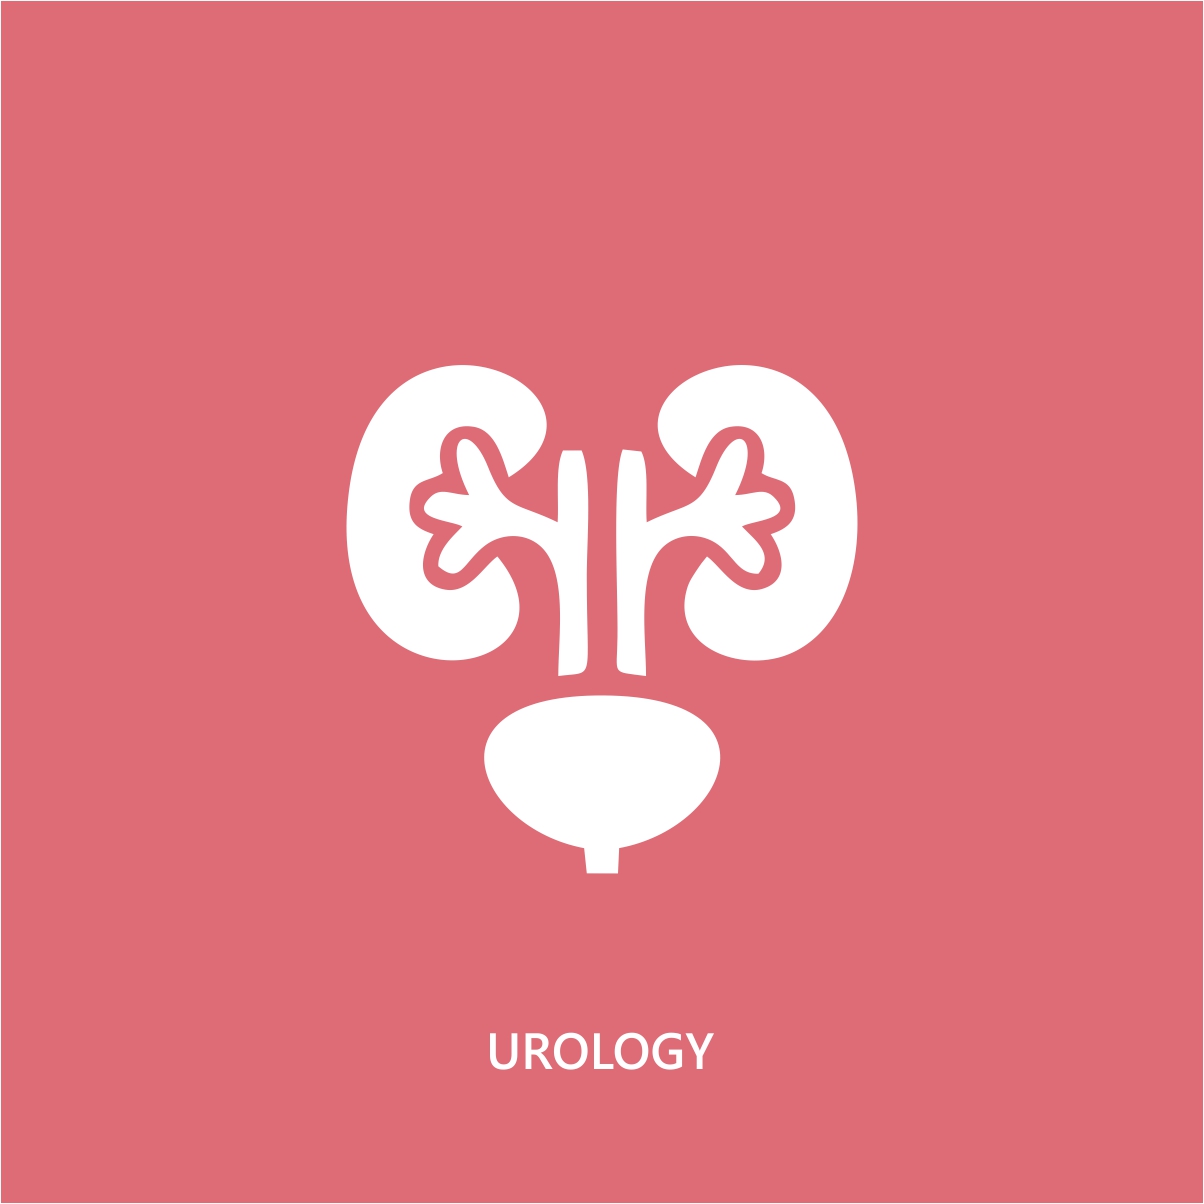 urology Image